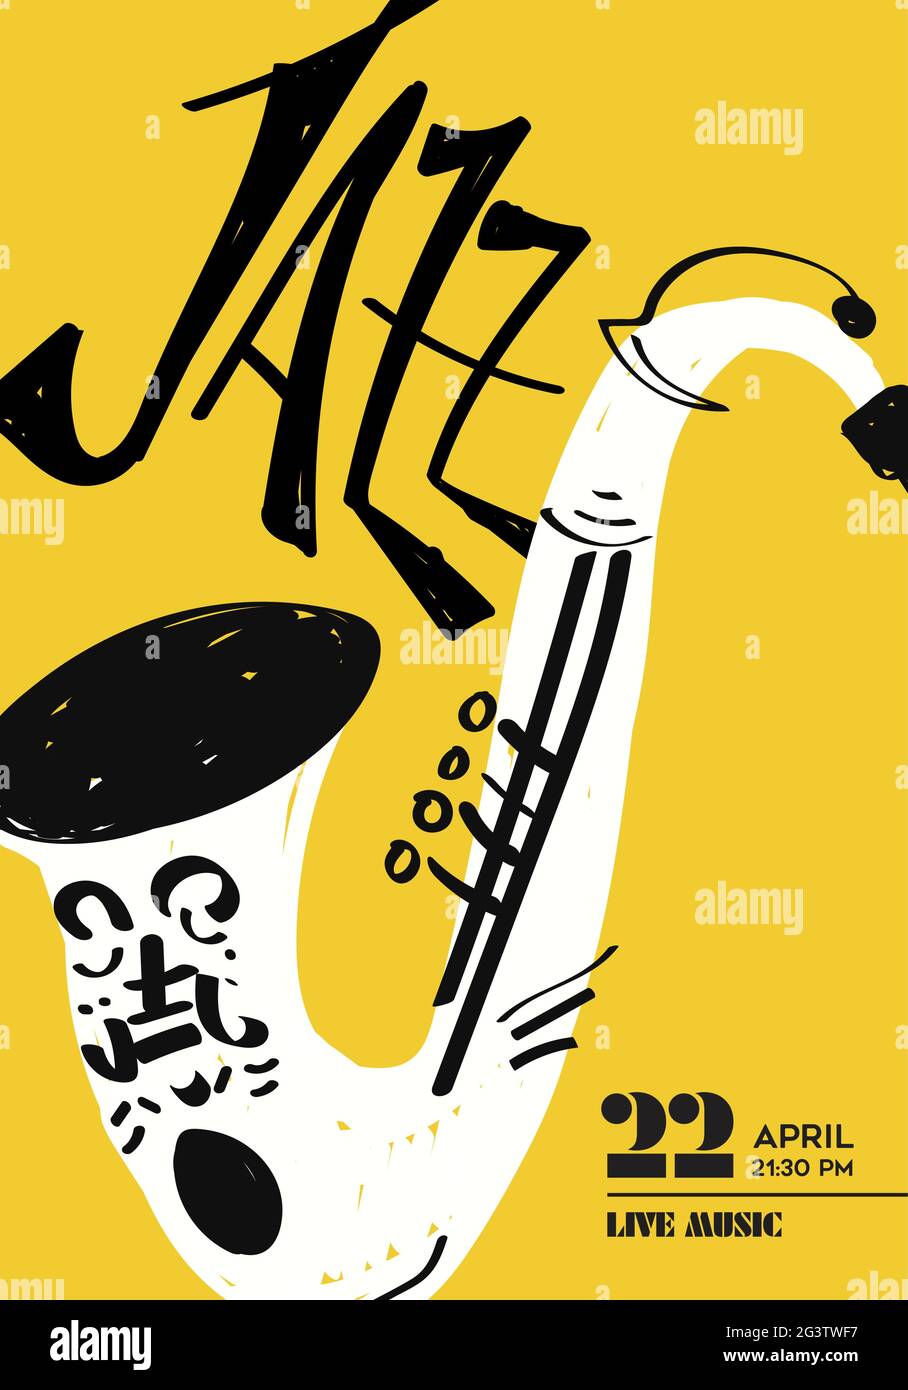 Affiche de musique jazz illustration de drôles de saxophone drôles dessinées à la main. Modèle d'événement de concert musical pour la boîte de nuit ou la fête de festival. Illustration de Vecteur